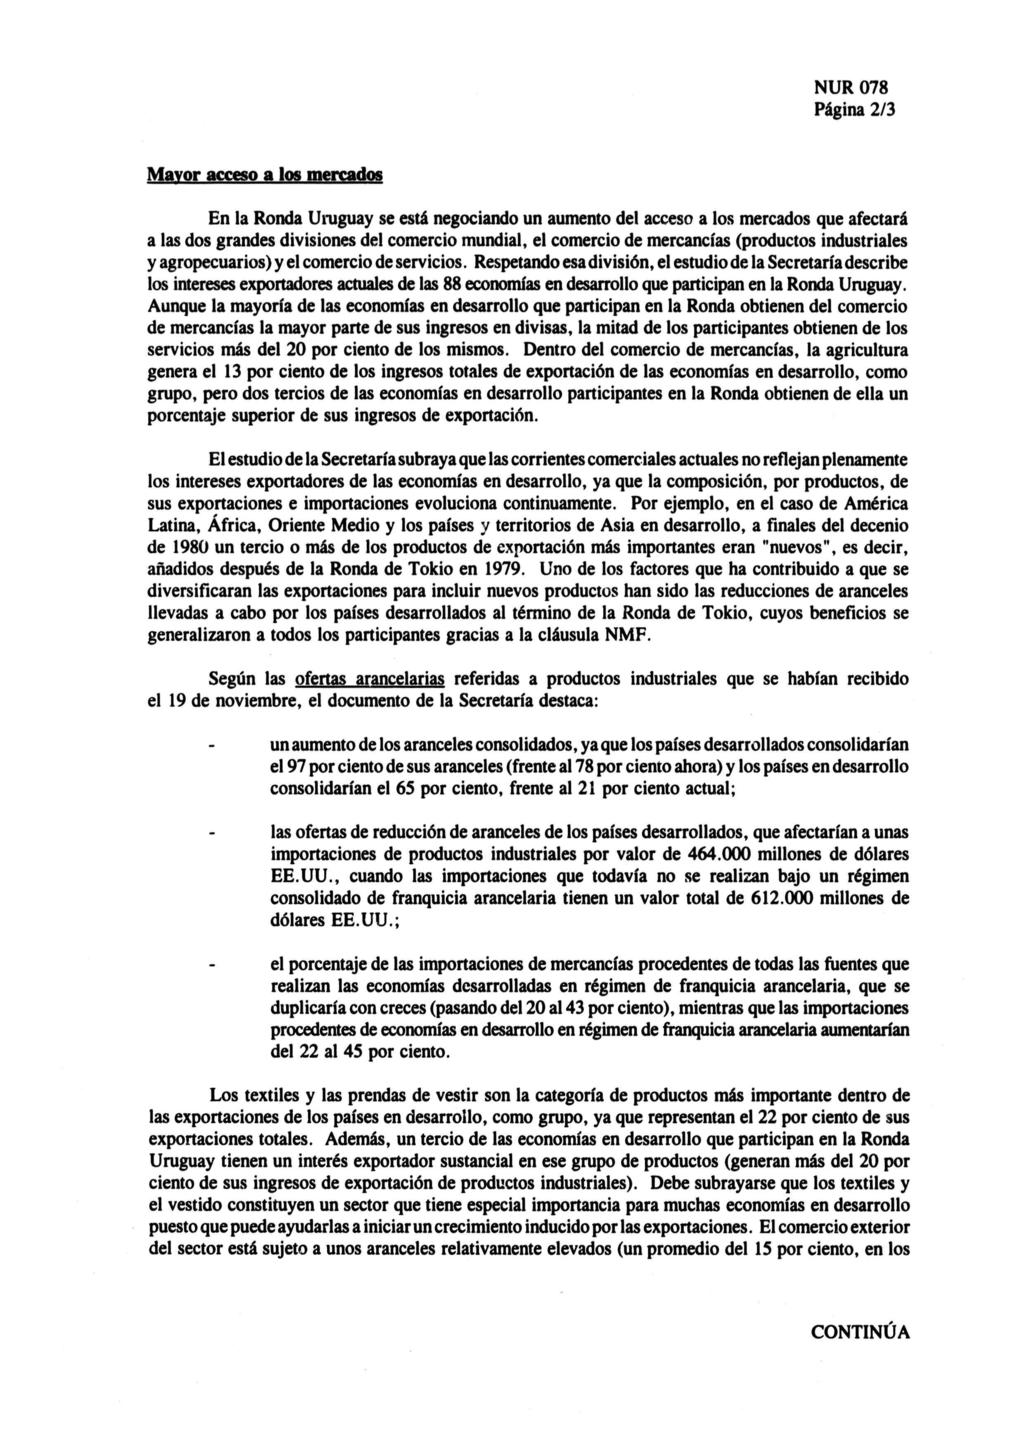 Página 2/3 Mayor acceso a los mercados En la Ronda Uruguay se está negociando un aumento del acceso a los mercados que afectará a las dos grandes divisiones del comercio mundial, el comercio de